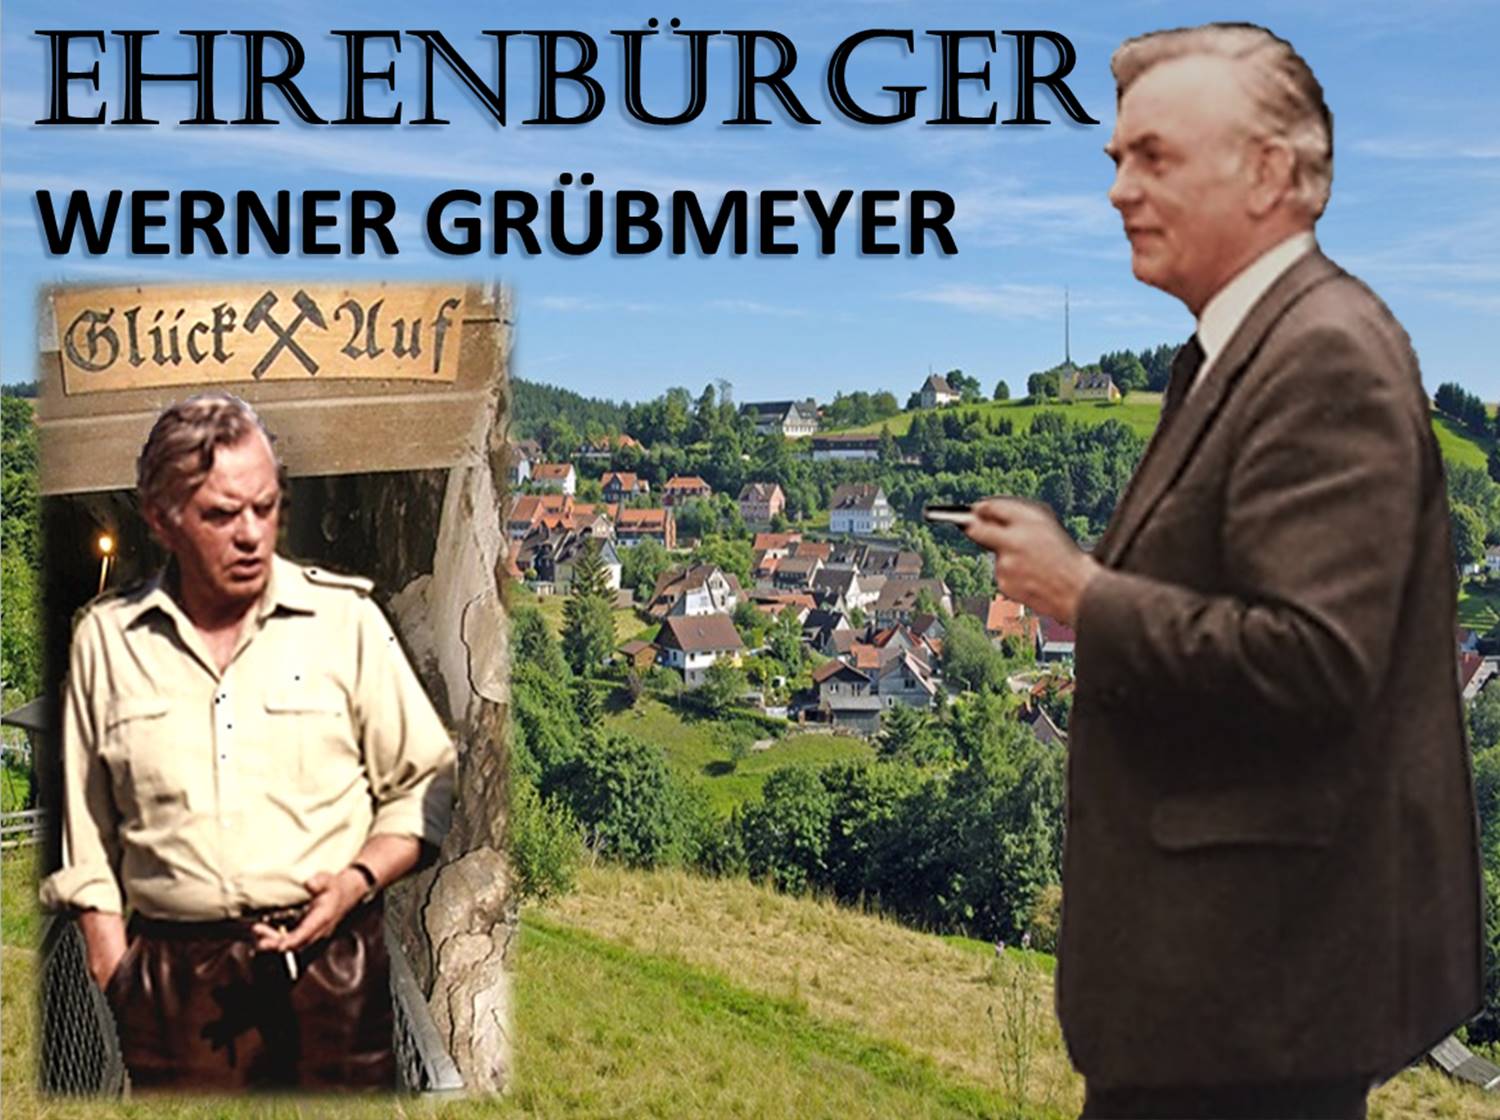 Ehrenbürger Werner Grübmeyer